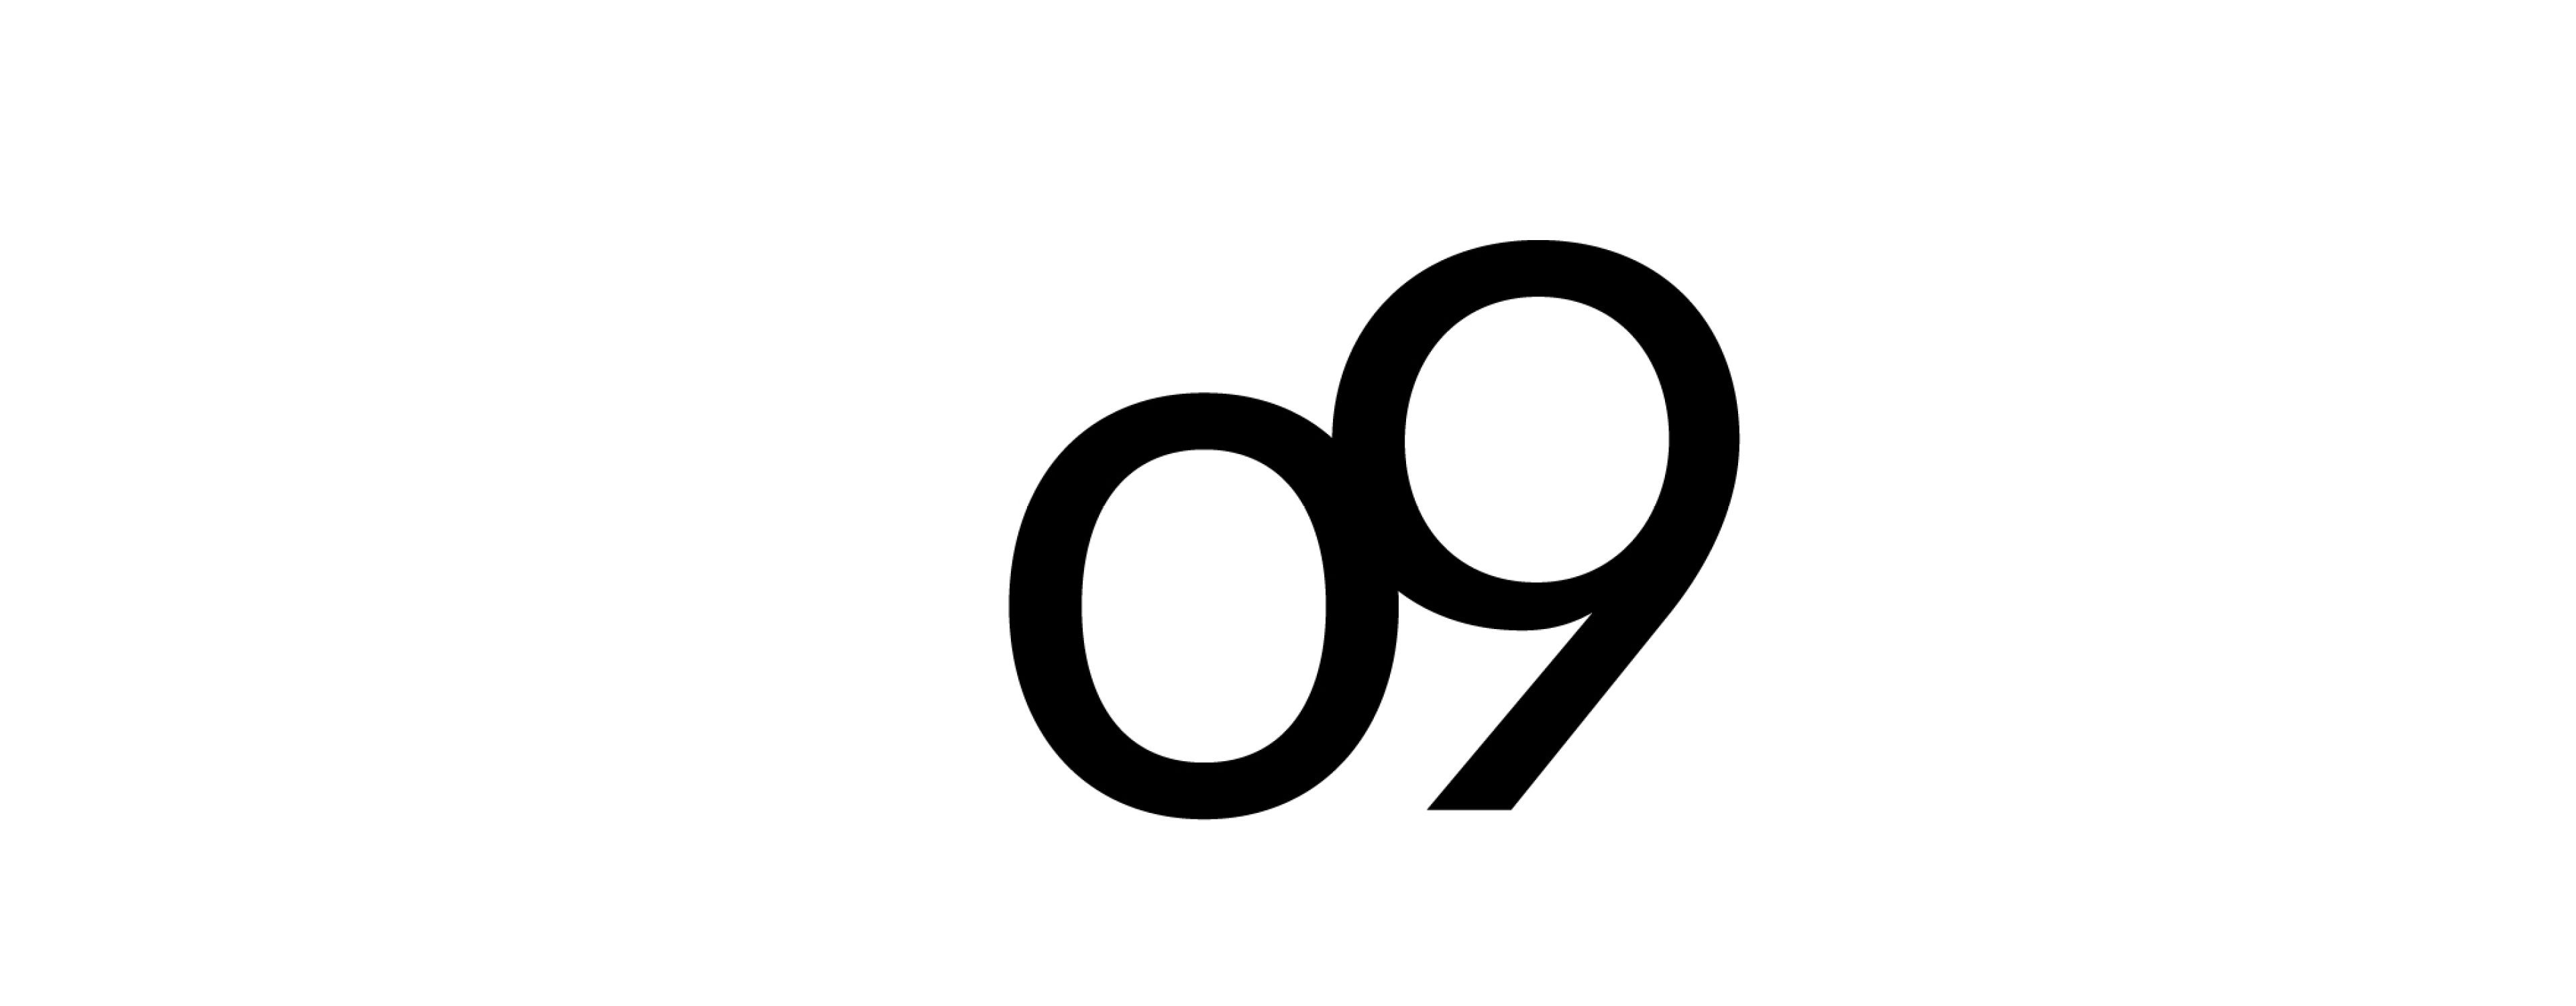 o9 logo